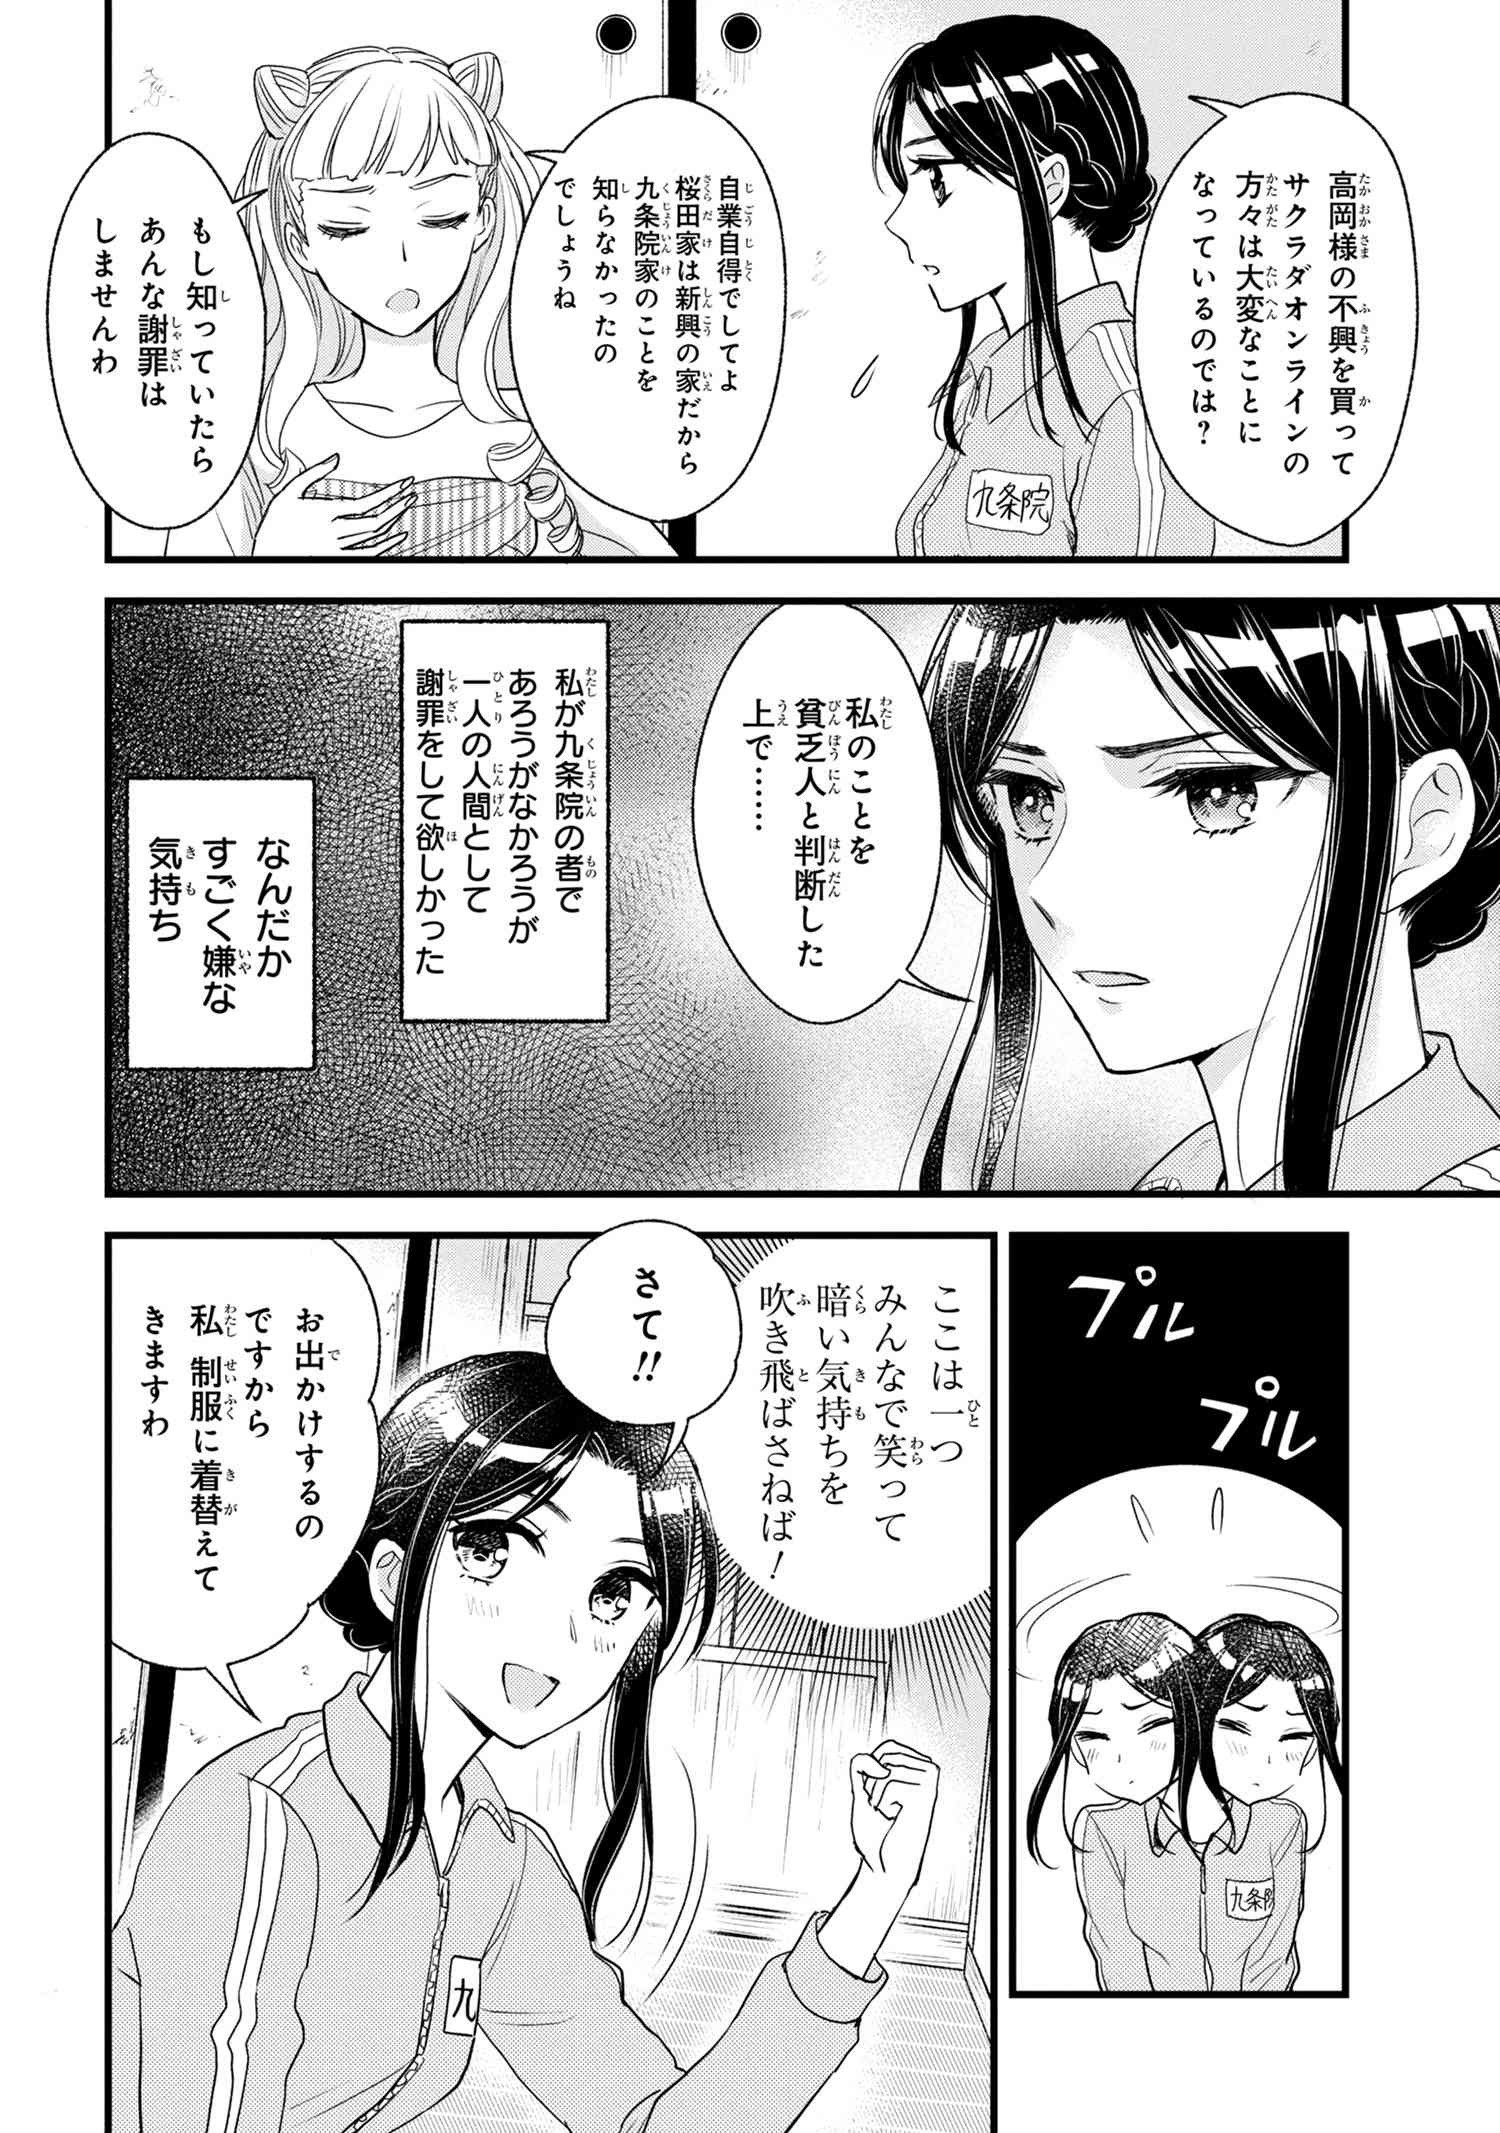 Reiko no Fuugi Akuyaku Reijou to Yobarete imasu ga, tada no Binbou Musume desu - Chapter 6-6 - Page 3